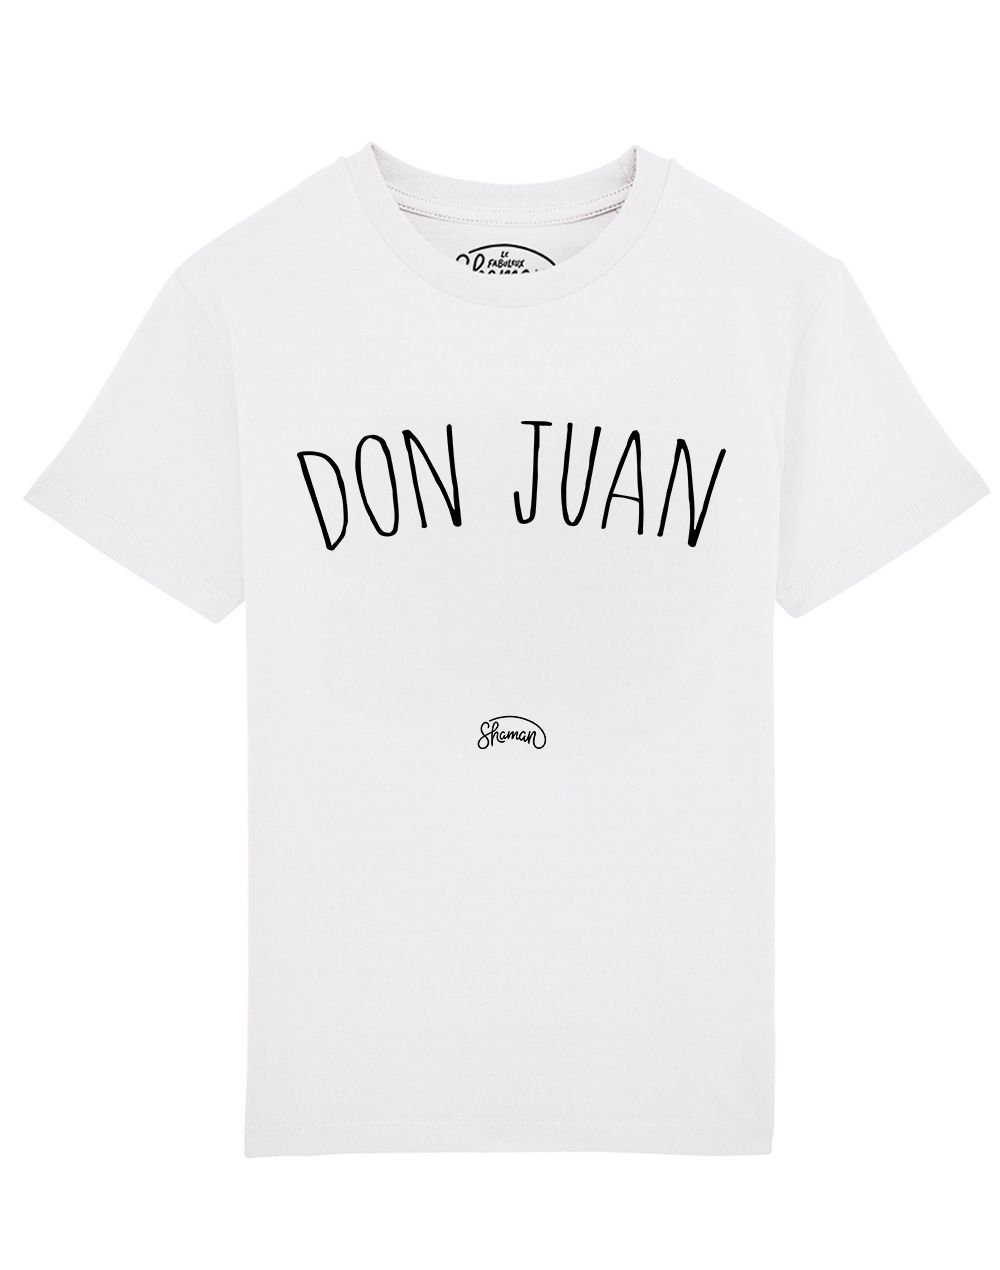 Tee shirt Don Juan